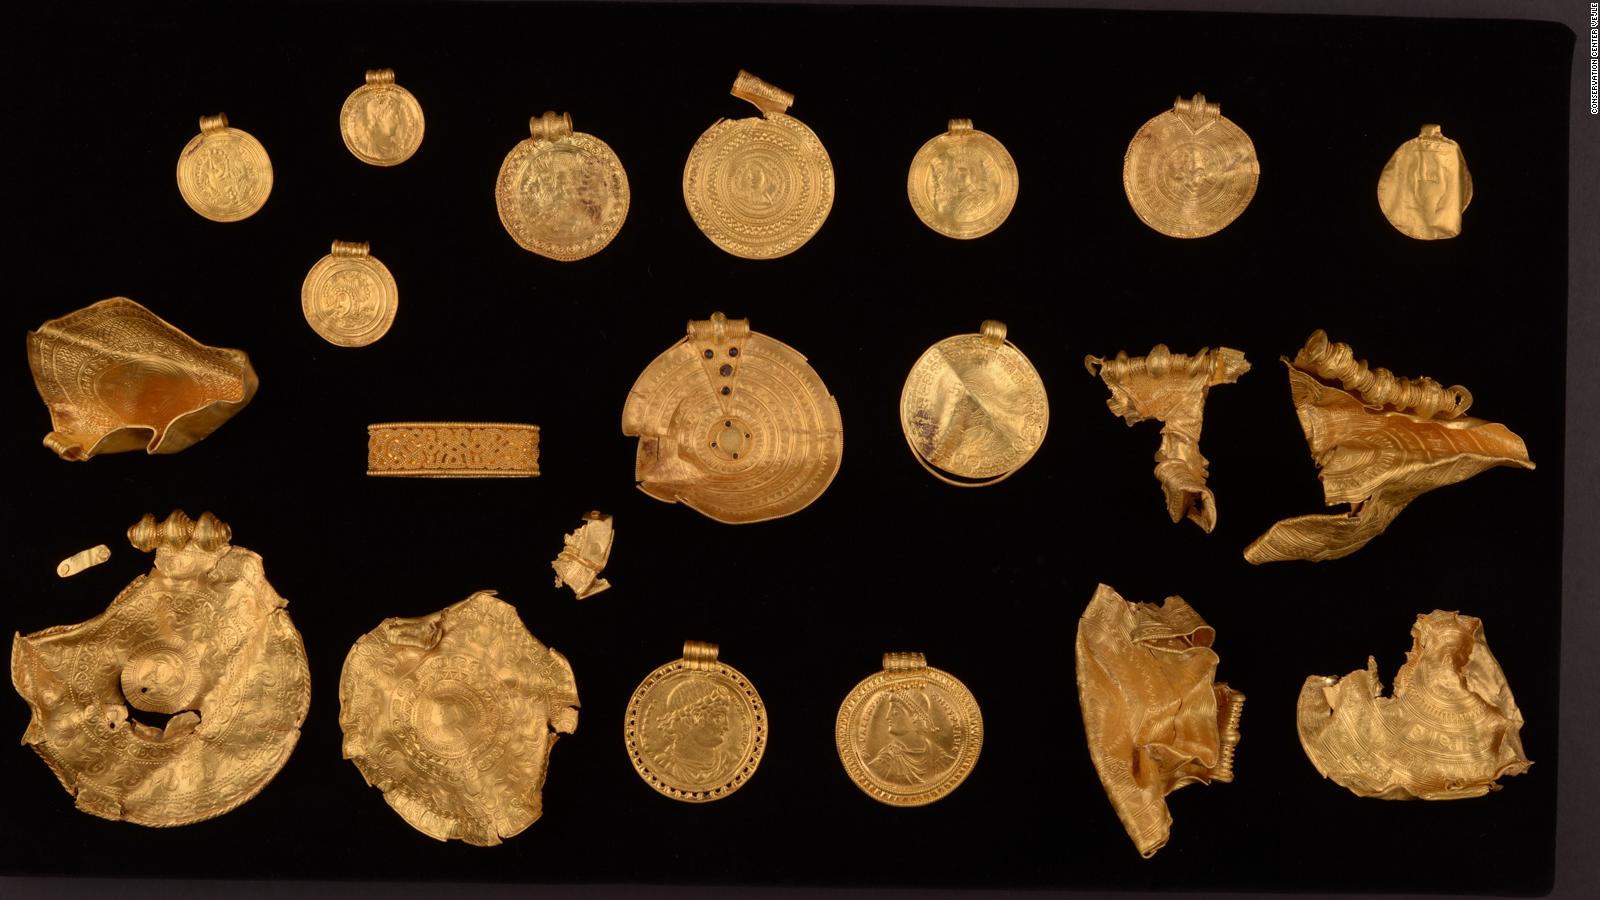 Với kho báu vàng thời đồ đồng, bạn sẽ được truyền cảm hứng để khám phá những kho báu xa xưa. Với những đồng tiền vàng phủ lên một rương đầy huyền thoại, bạn sẽ cảm nhận được sự kết hợp giữa lịch sử và văn hóa. Khám phá những phát hiện đầy ý nghĩa và tìm hiểu sự phát triển của nhân loại với kho báu vàng thời đồ đồng.